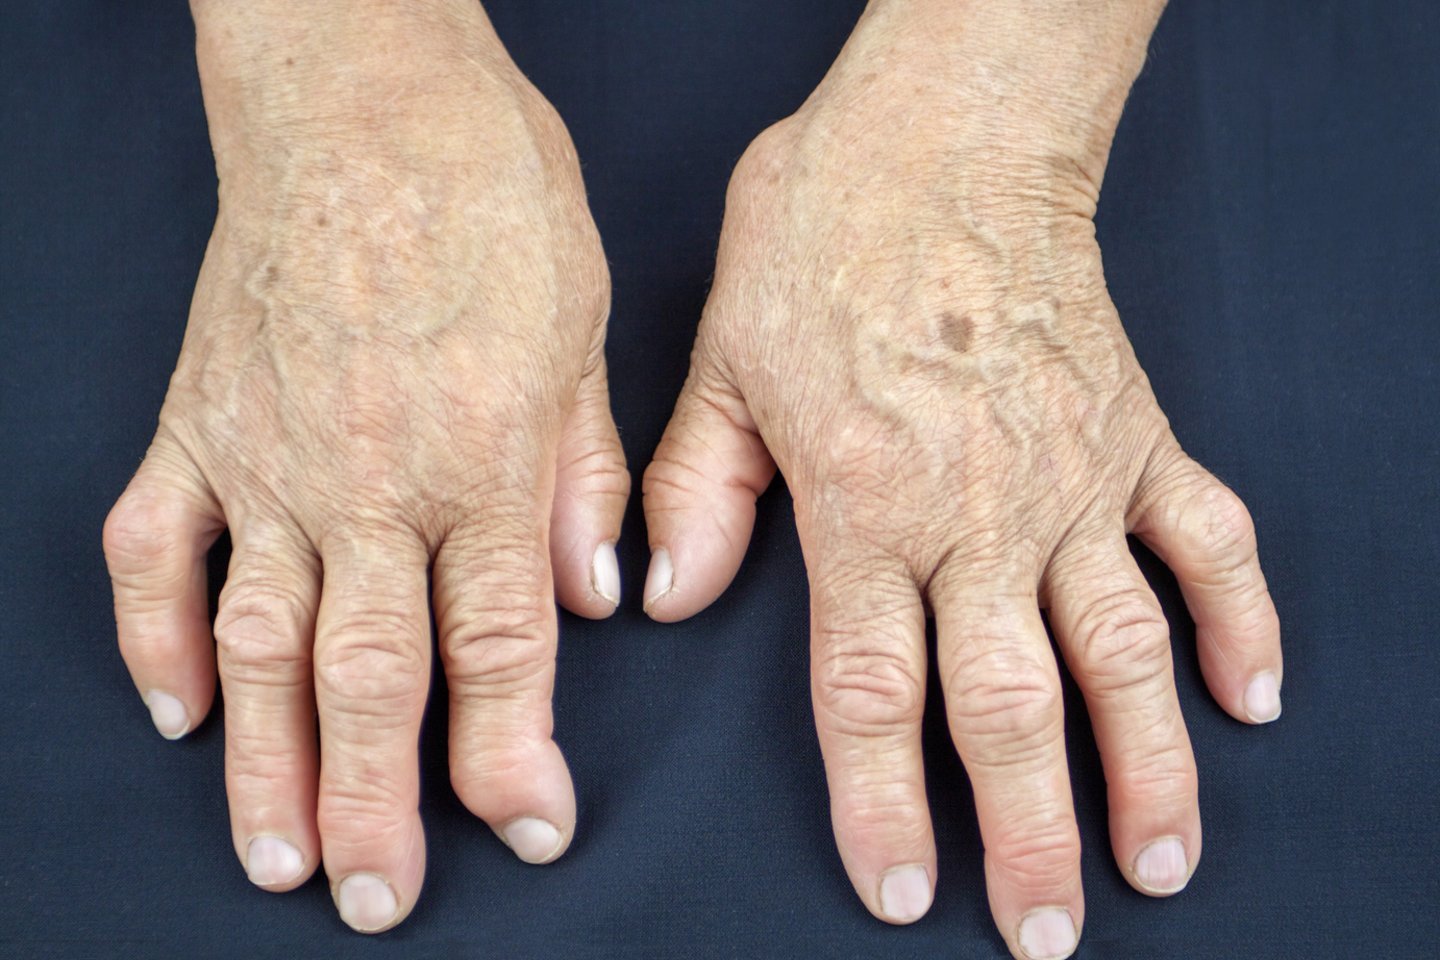 artritas maži sąnarių stotelė receptai vanga iš sąnarių ligų